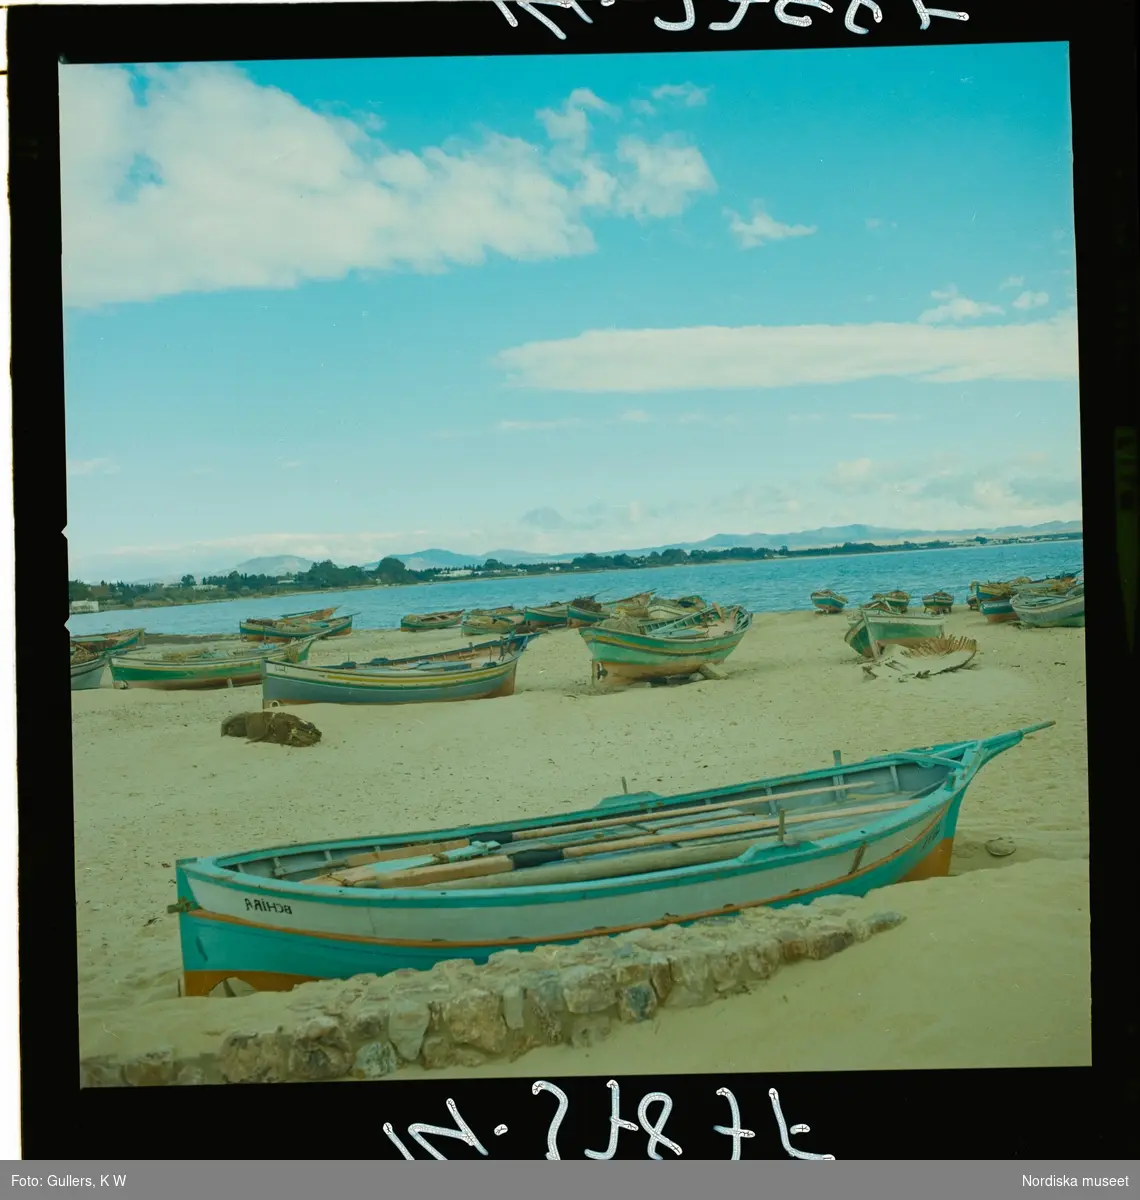 2791 Tunisien Kartago. Traditionellt målade båtar på strand.